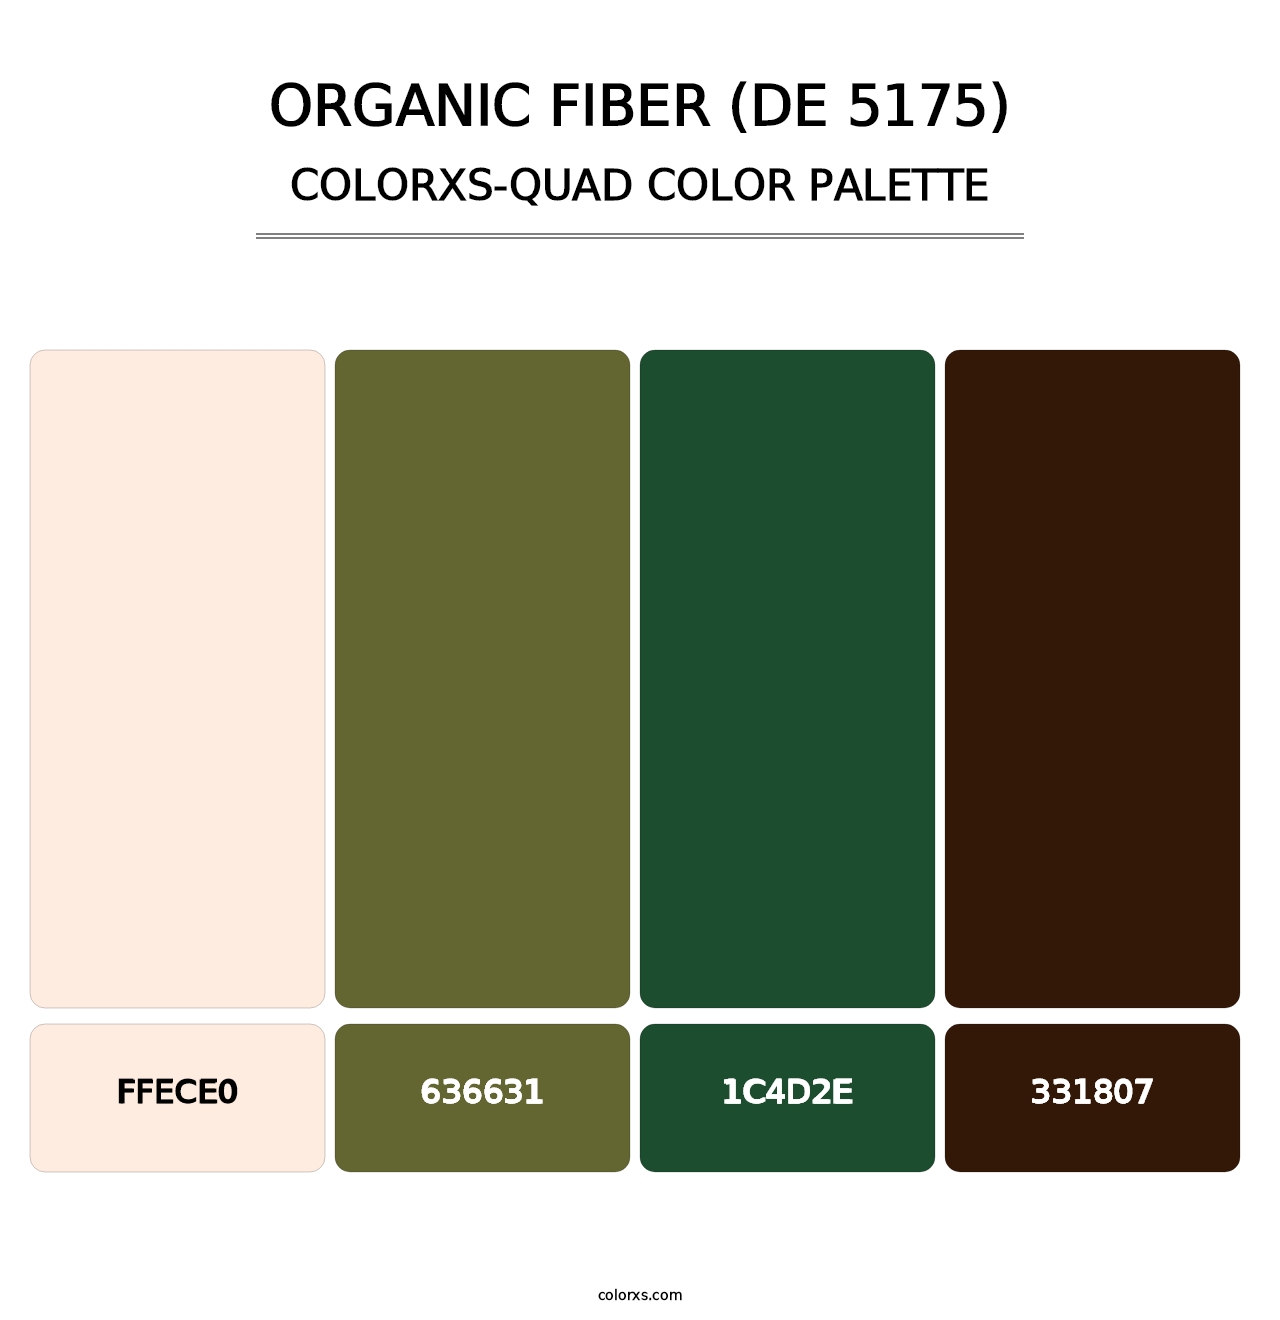 Organic Fiber (DE 5175) - Colorxs Quad Palette